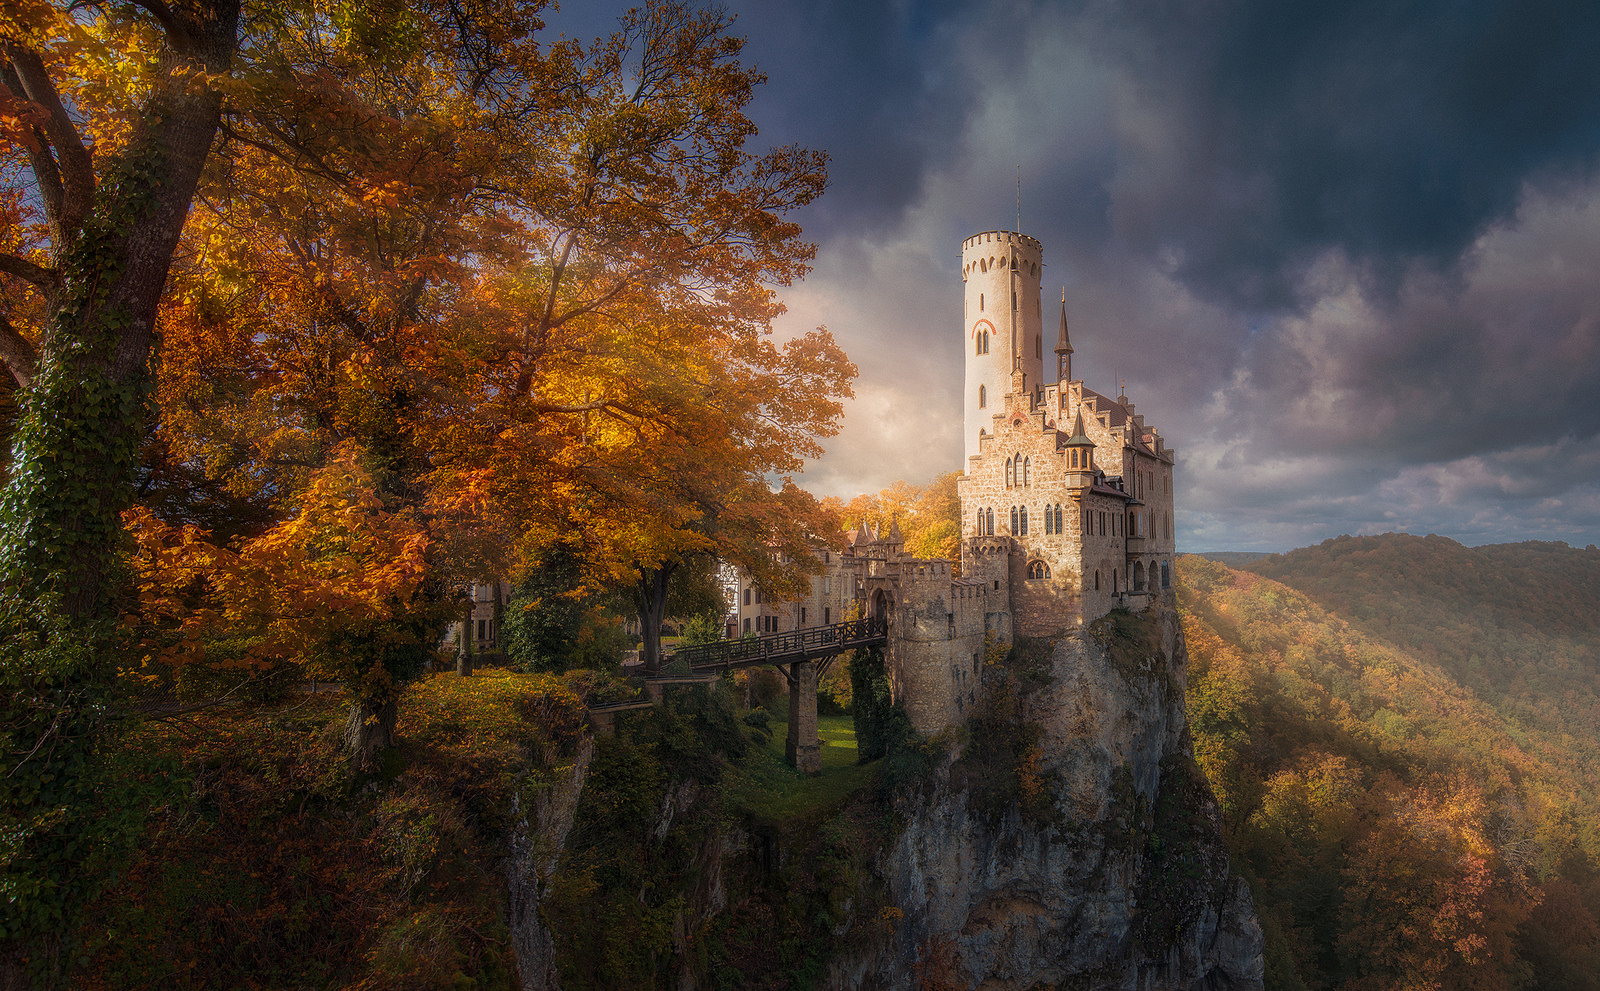 Download the Autumn Hilltop Castle Wallpaper, Autumn Hilltop